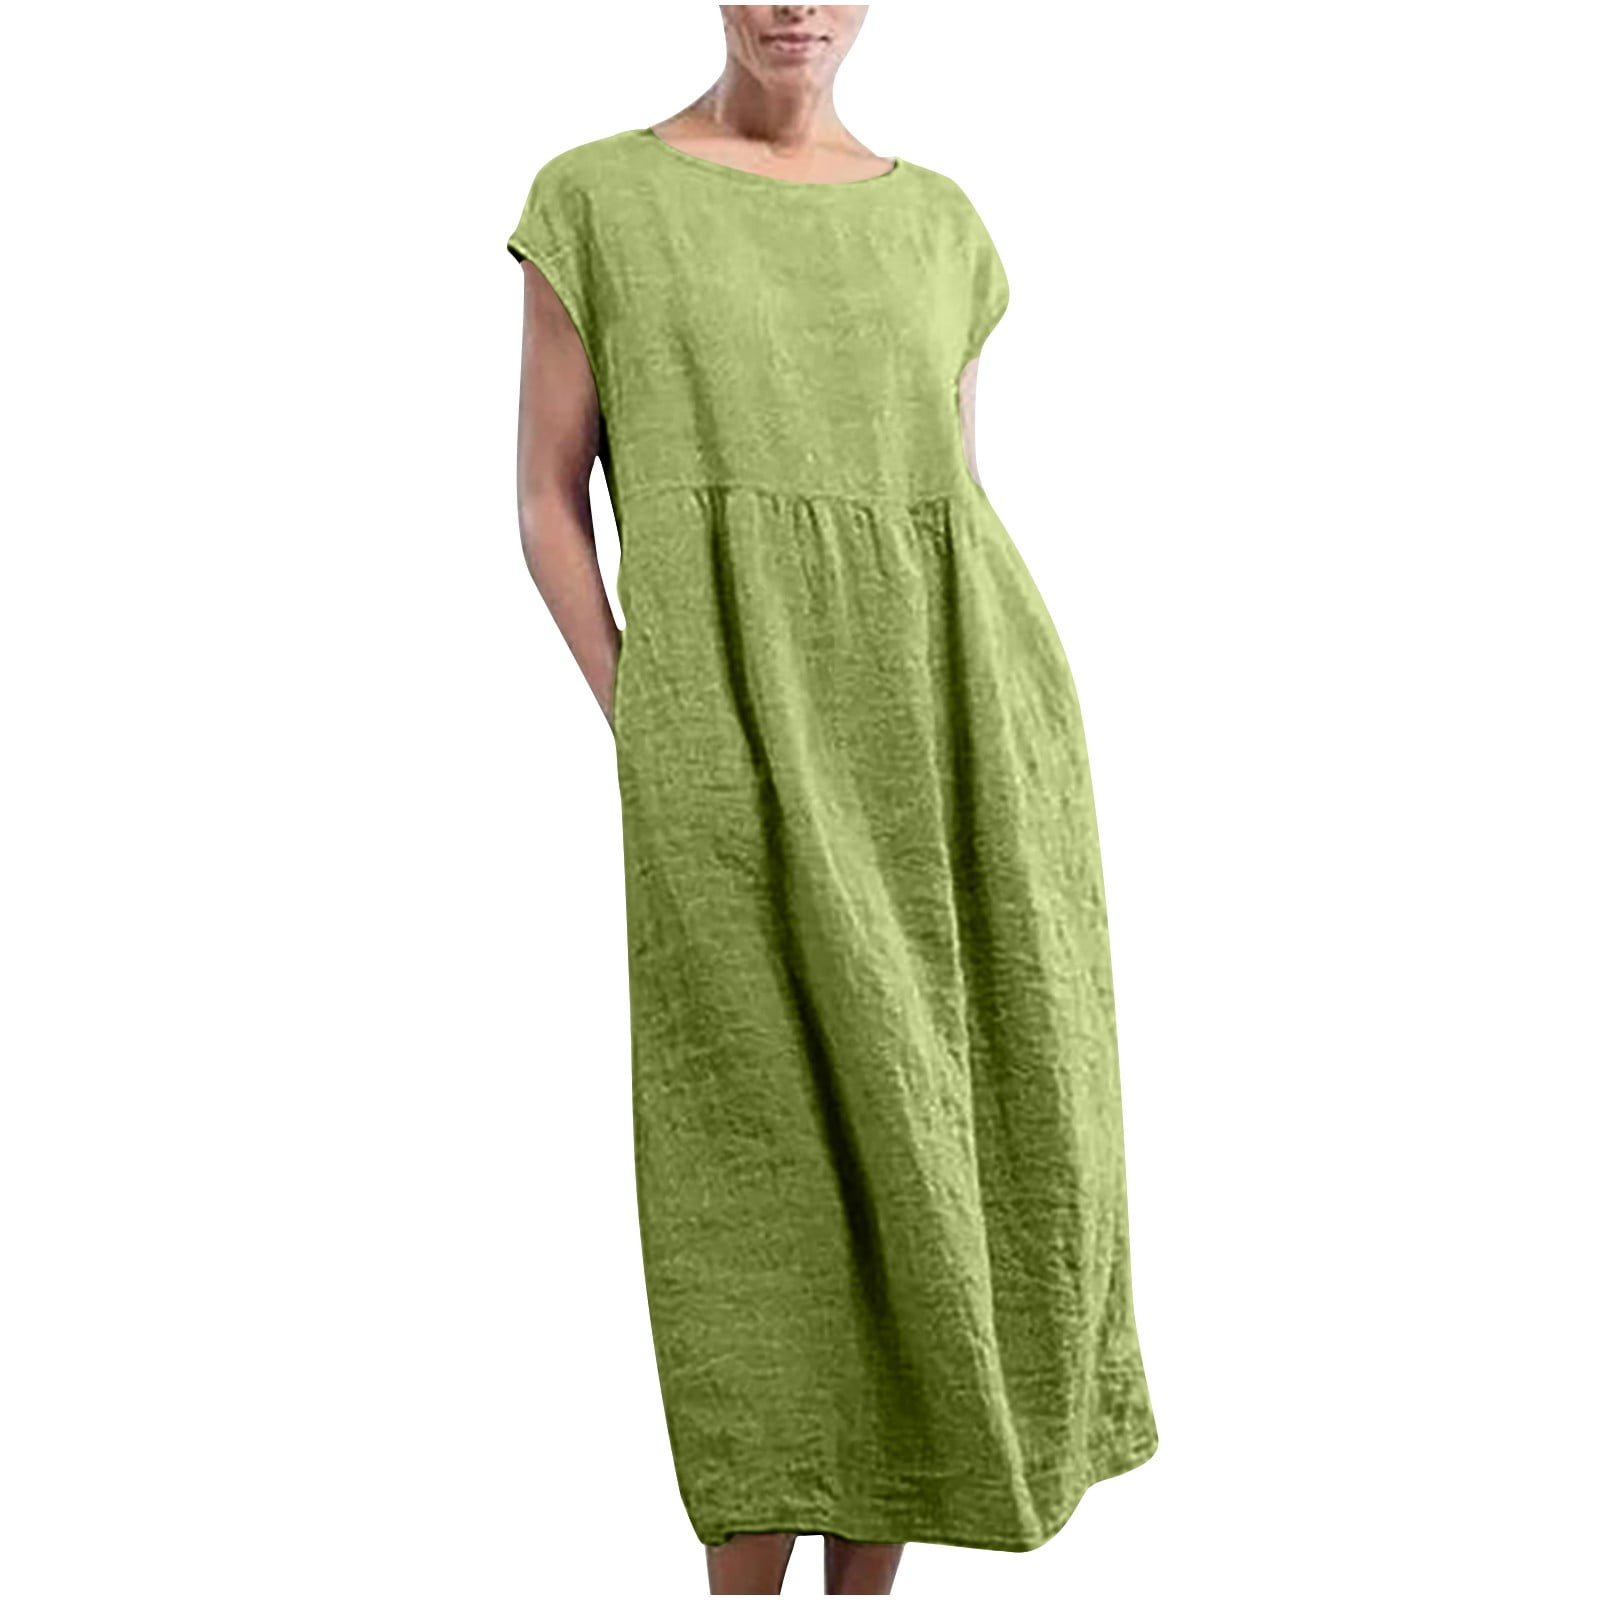 QLEICOM Summer Dress for Women Solid Sleeveless Cotton Linen Dress ...